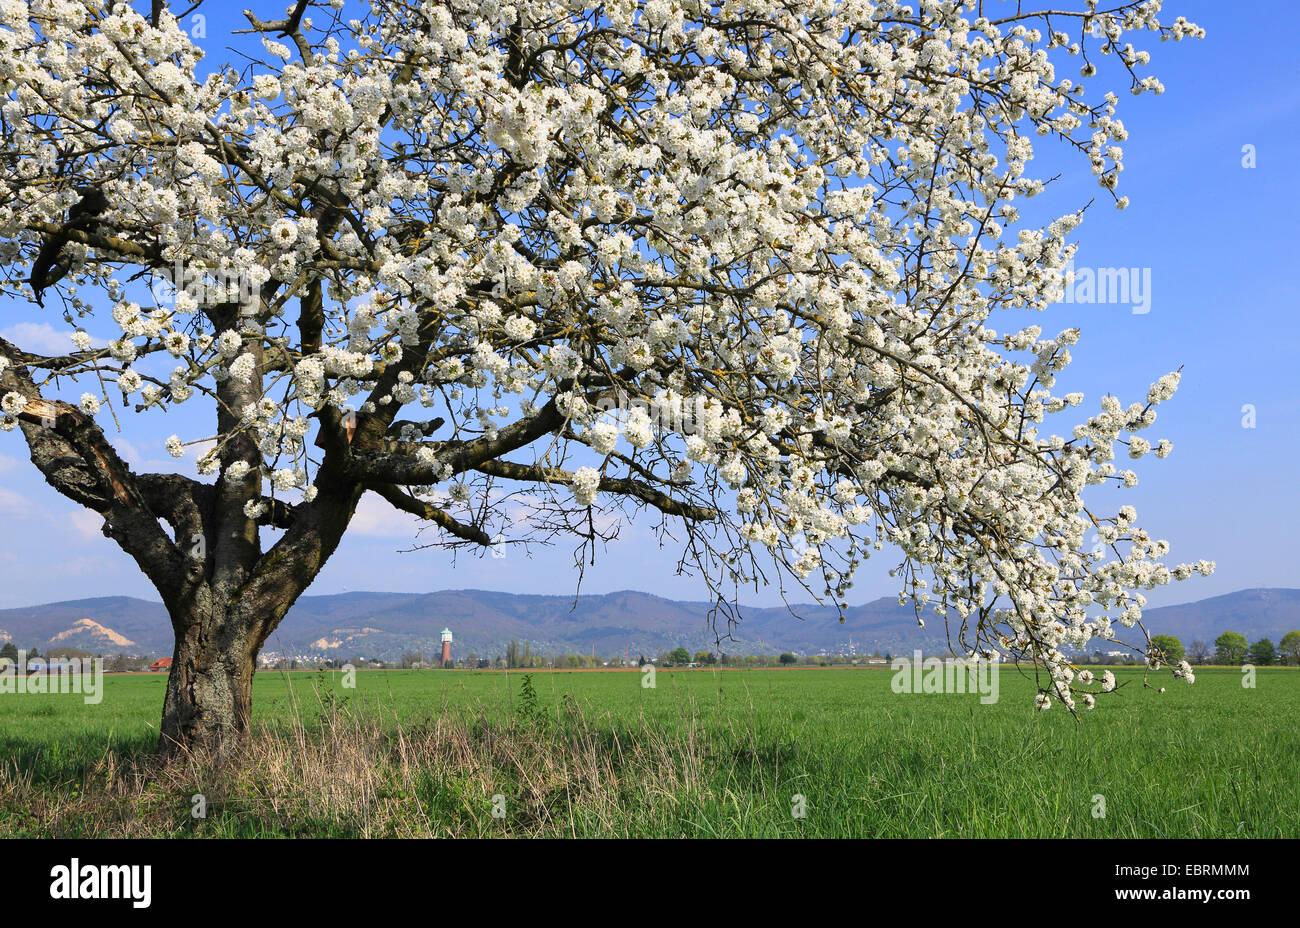 Cherry tree, Sweet cherry (Prunus avium), blooming cherry tree in field landscape, Germany Stock Photo